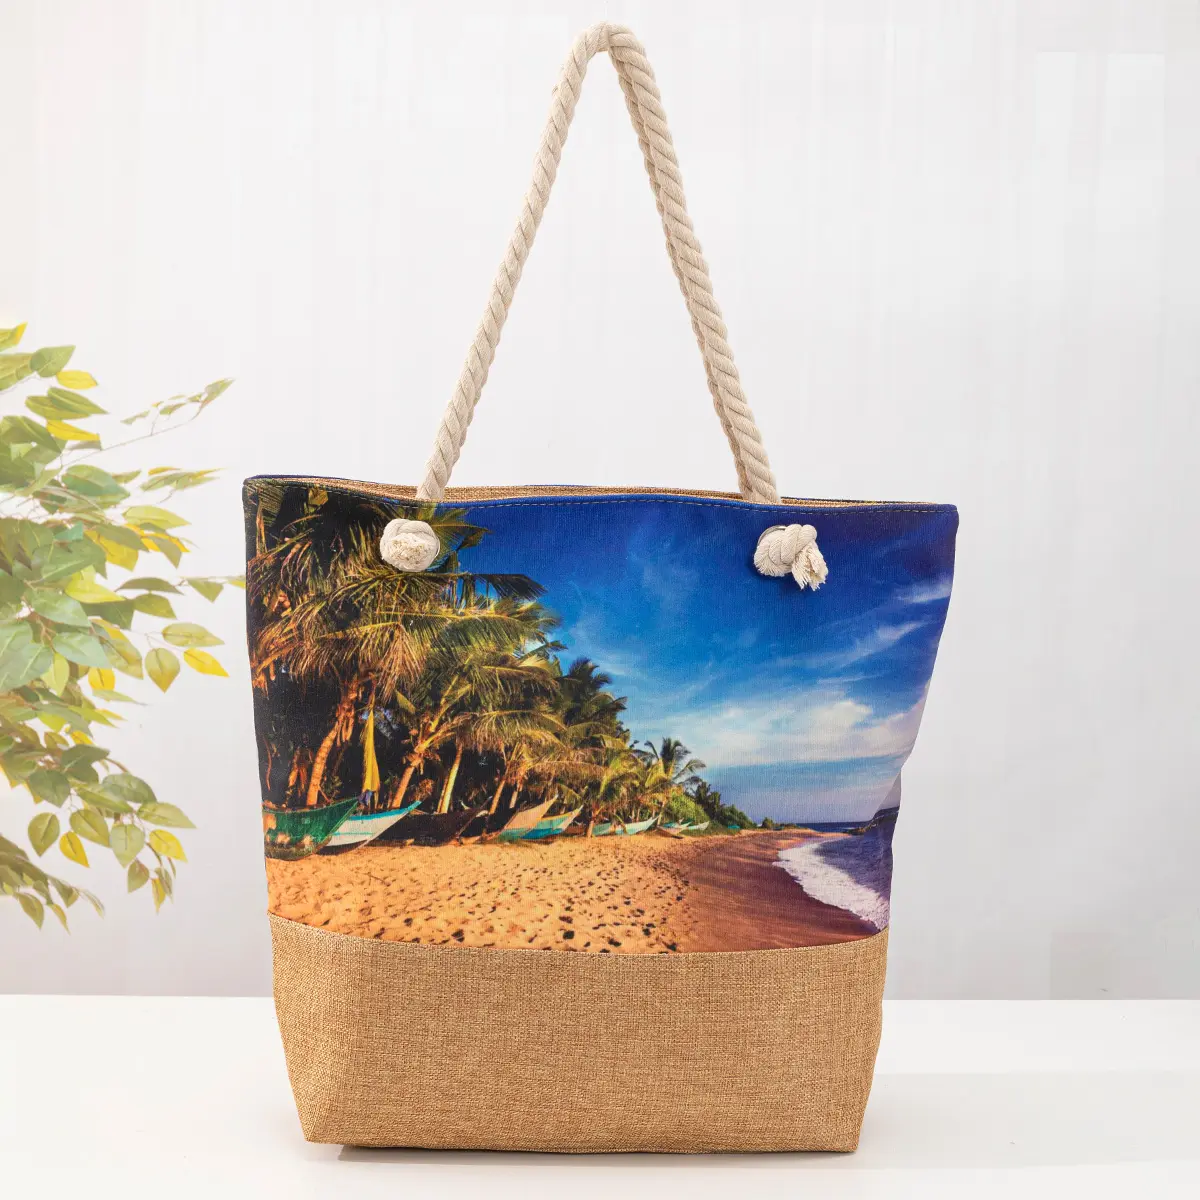 Toptan yeni hindistan cevizi ağacı plaj omuzdan askili çanta büyük kapasiteli tote kanvas çanta moda kadınlar için basit plaj çantası